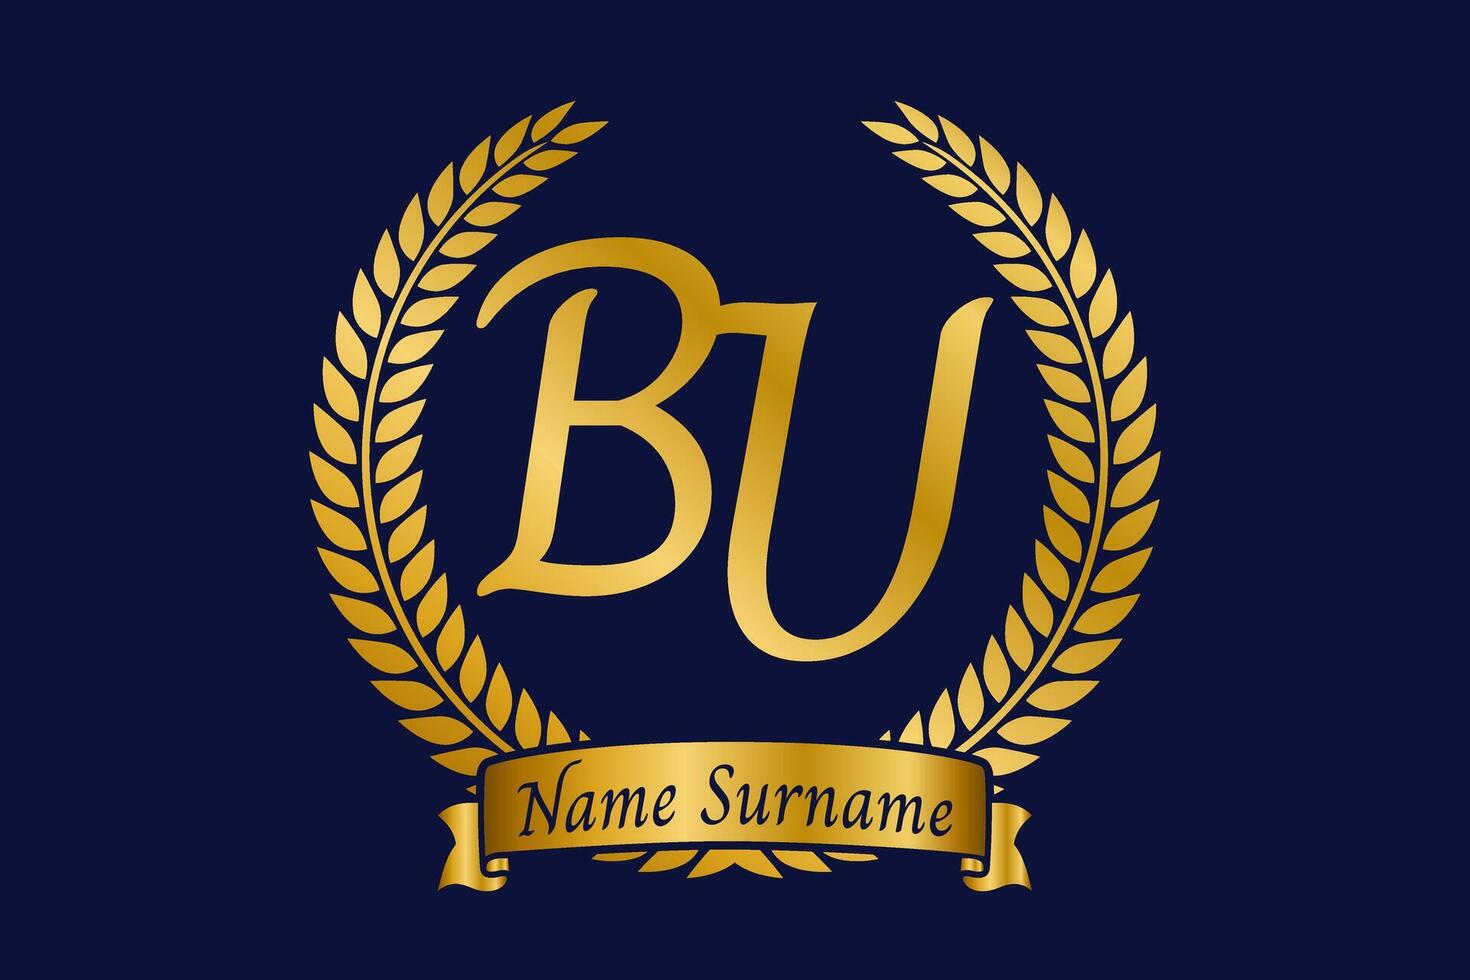 eerste brief b en jij, bu monogram logo ontwerp met laurier lauwerkrans. luxe gouden schoonschrift lettertype. vector